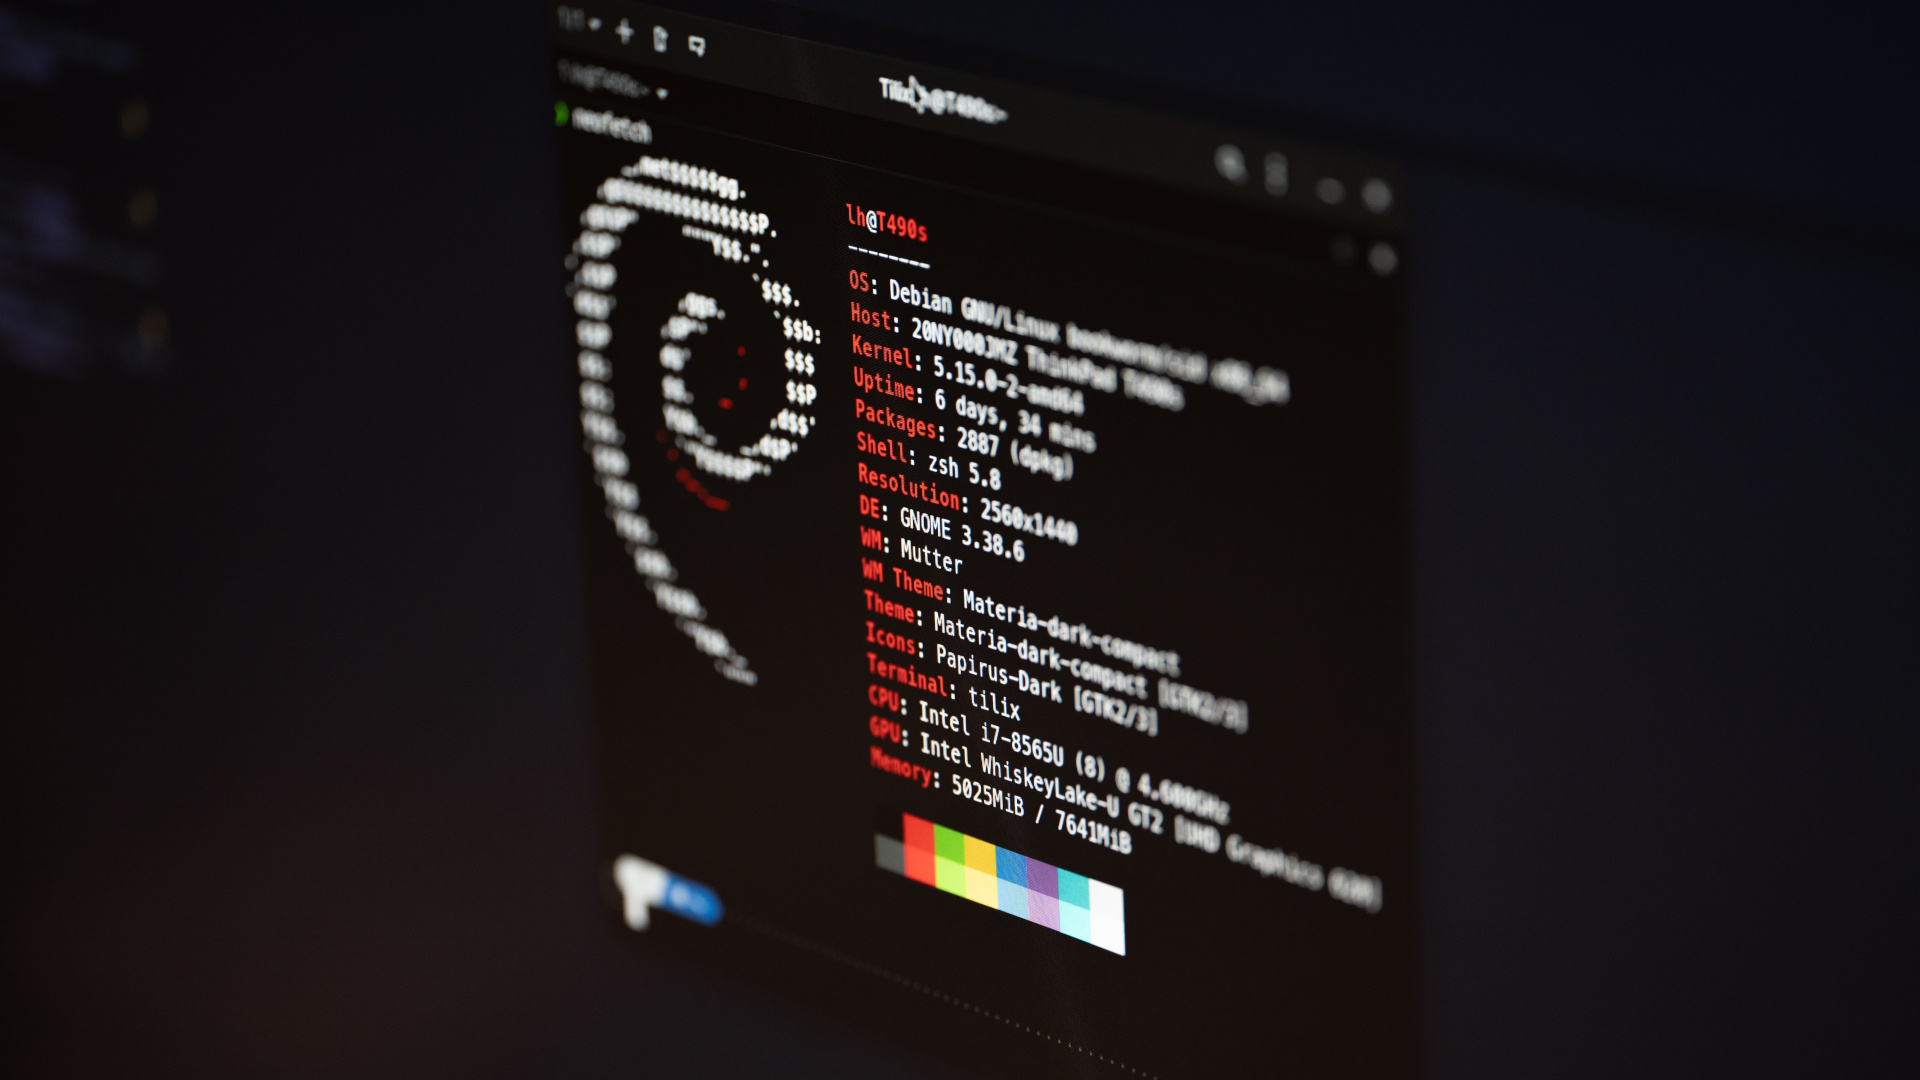 10 principais comandos do Linux para executar tarefas [Terminal] - Imagem: Lukas on Unsplash